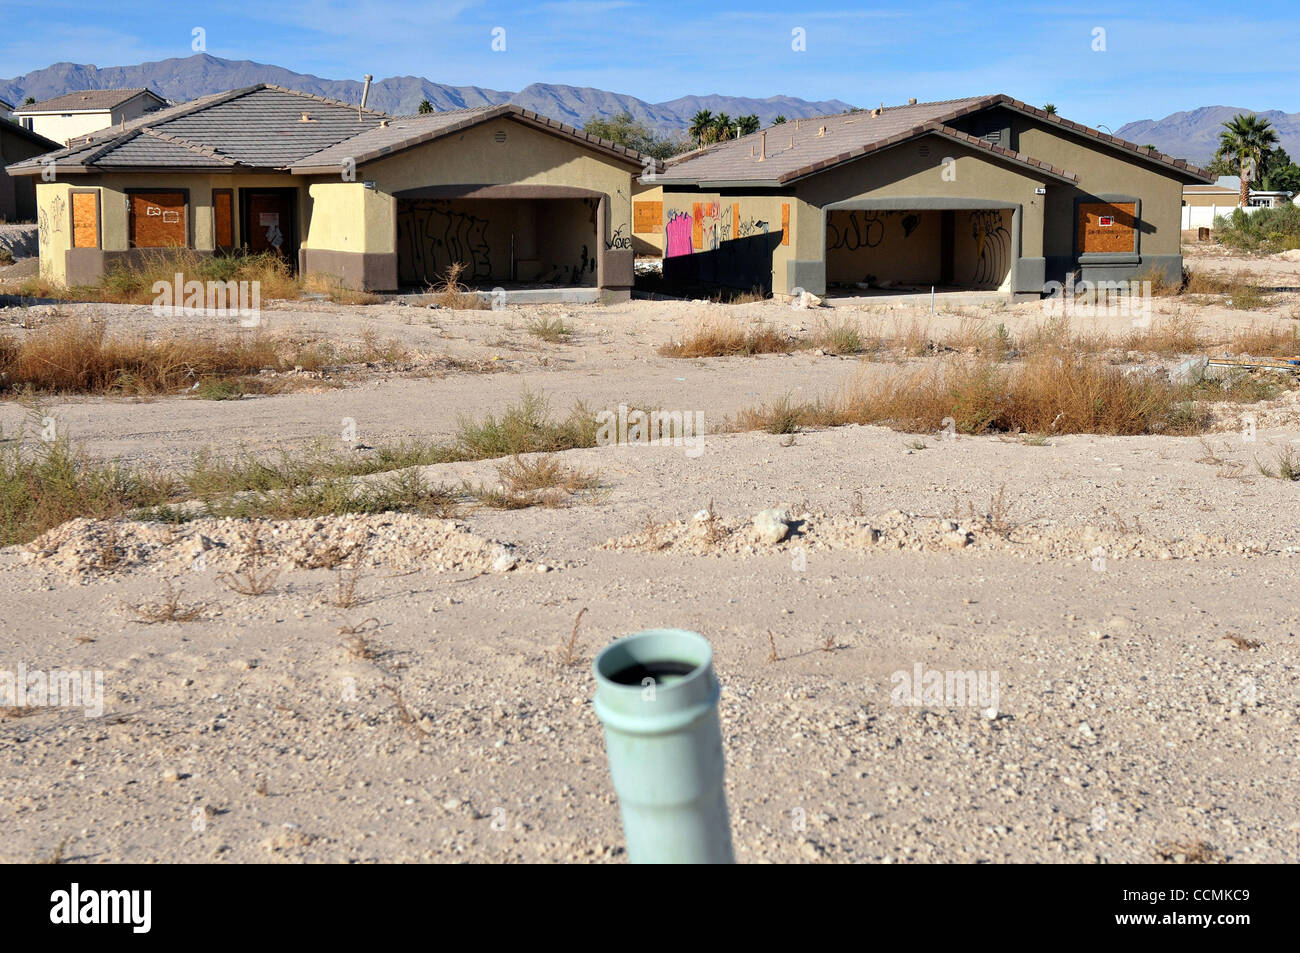 Como encontrar casas abandonadas nos EUA (vacant houses) 